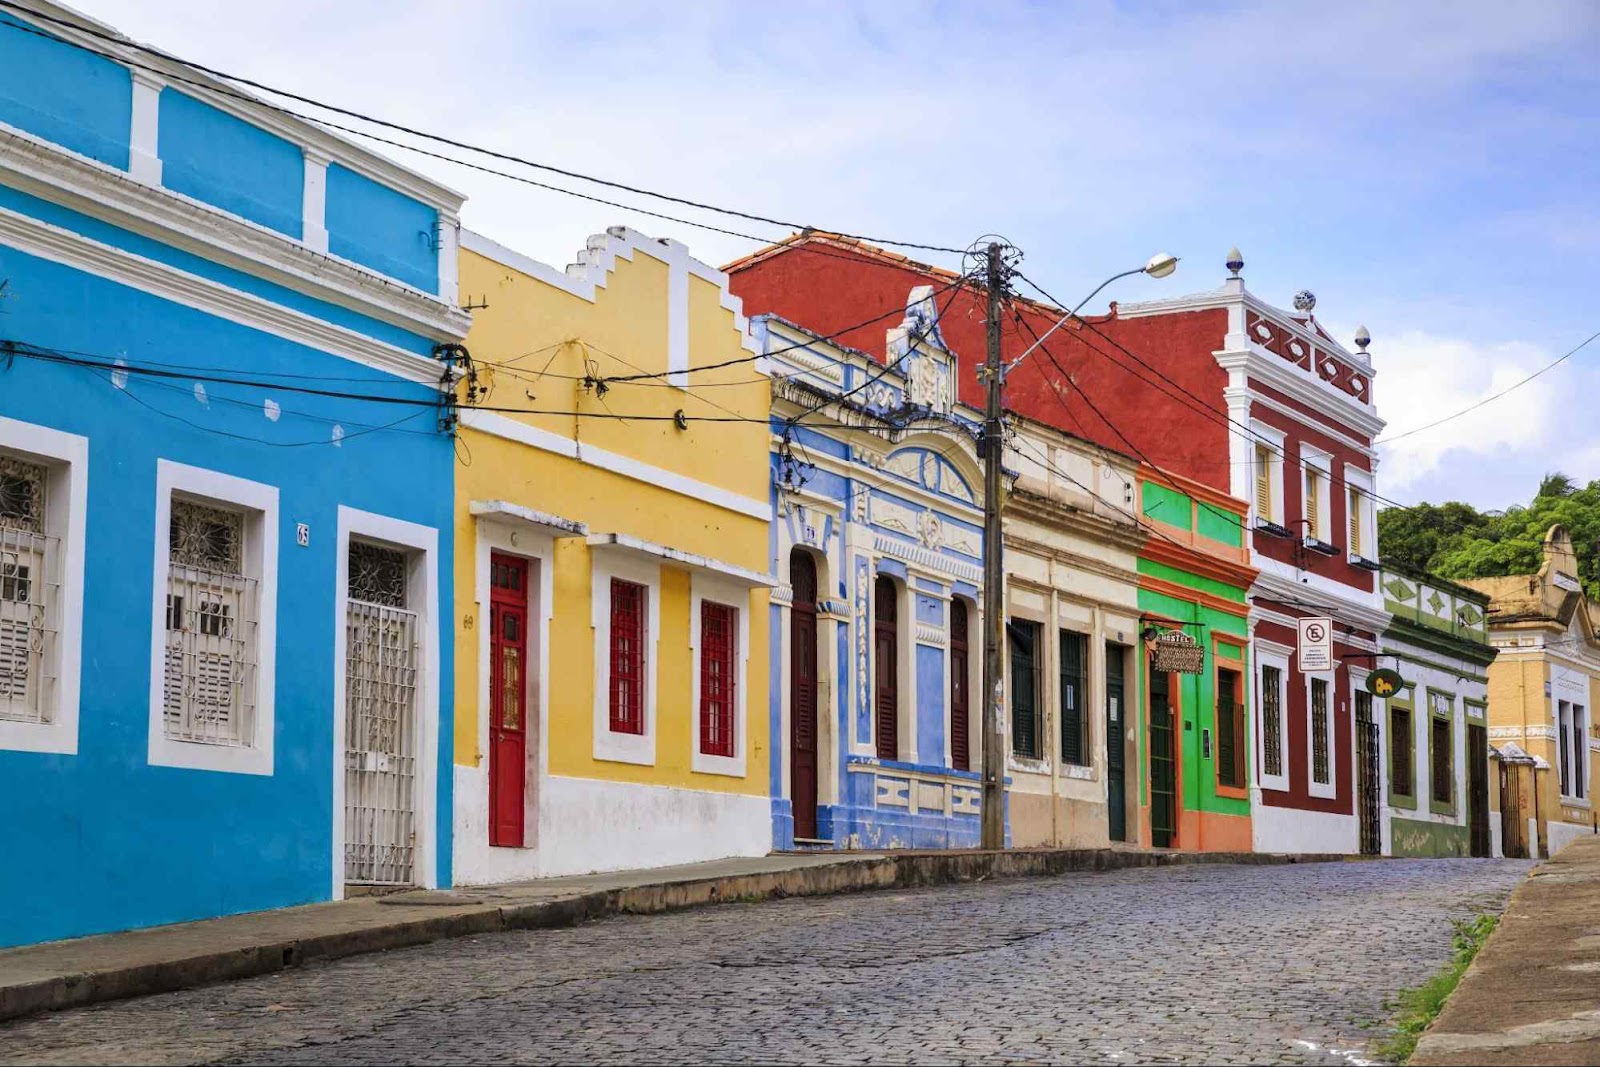 Antigas casas do conjunto arquitetônico de Olinda. Elas estão enfileiradas em uma rua de paralelepípedo e têm fachadas estreitas e coloridas.